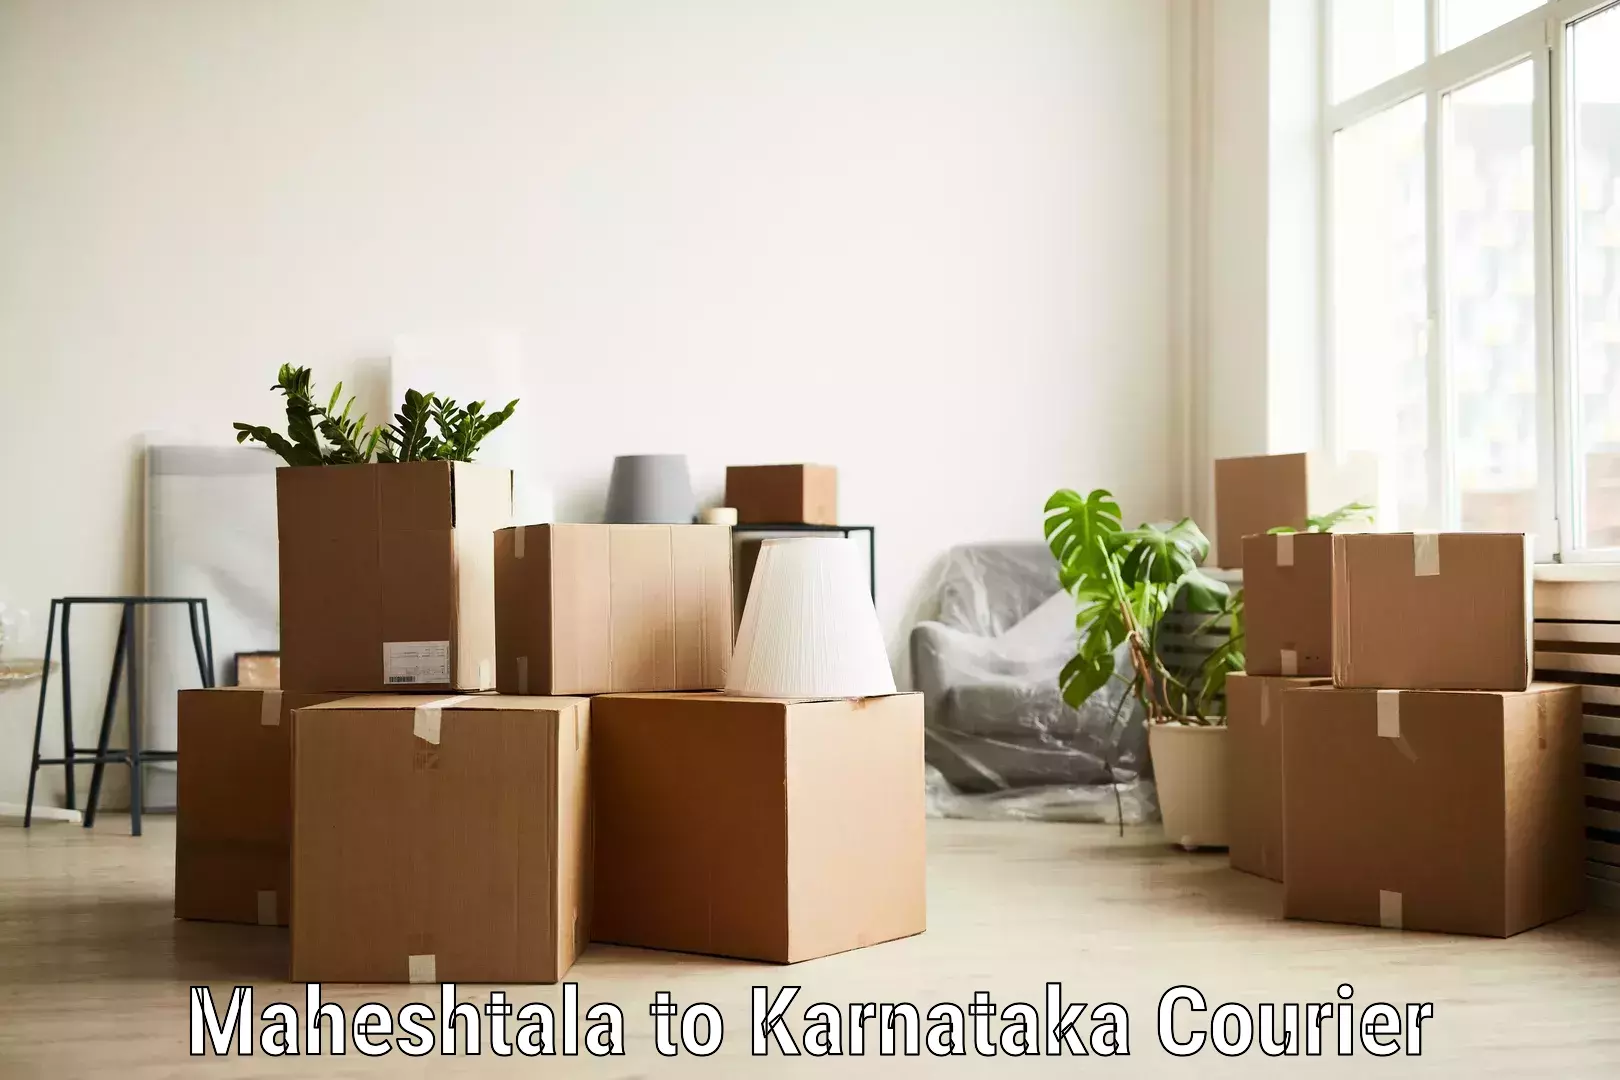 24/7 courier service Maheshtala to Karnataka